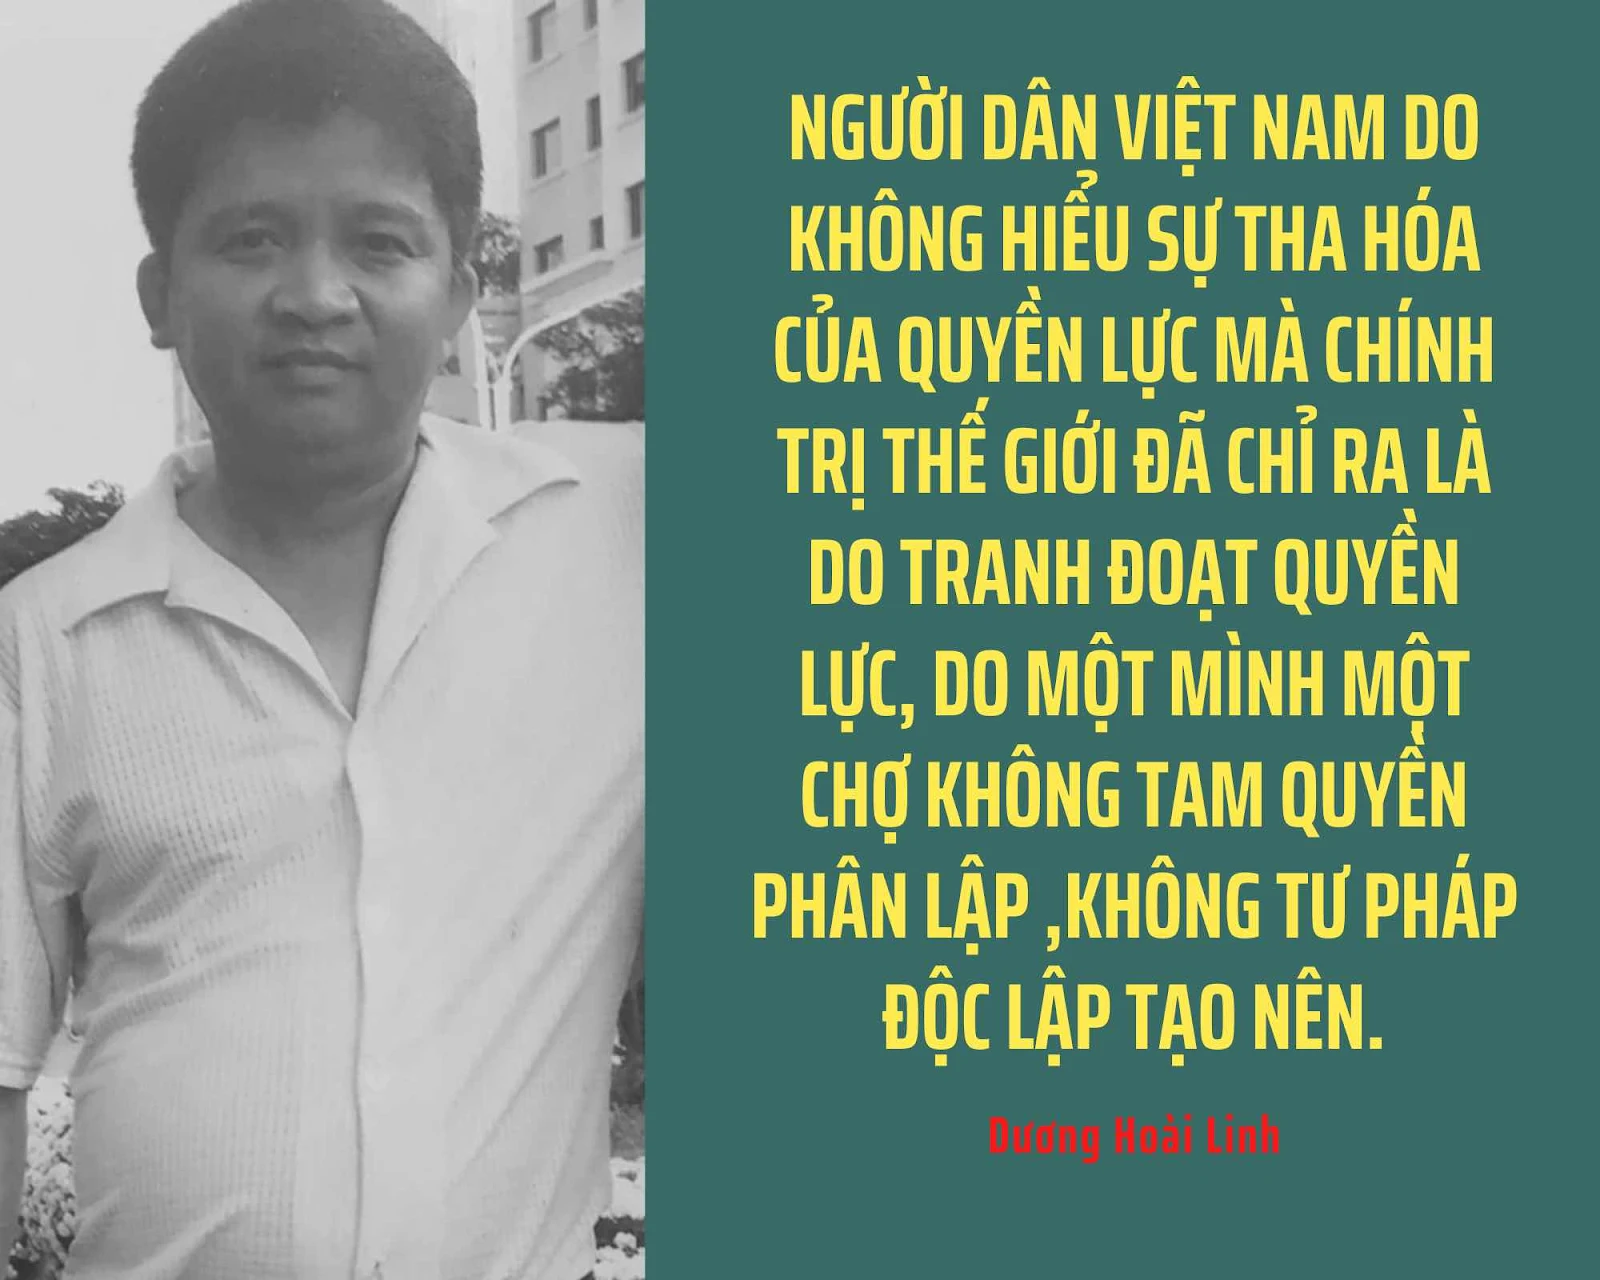 Người dân Việt Nam do không hiểu sự tha hóa của quyền lực mà chính trị thế giới đã chỉ ra là do tranh đoạt quyền lực, do một mình một chợ không tam quyền phân  lập ,không tư pháp độc lập tạo  nên.